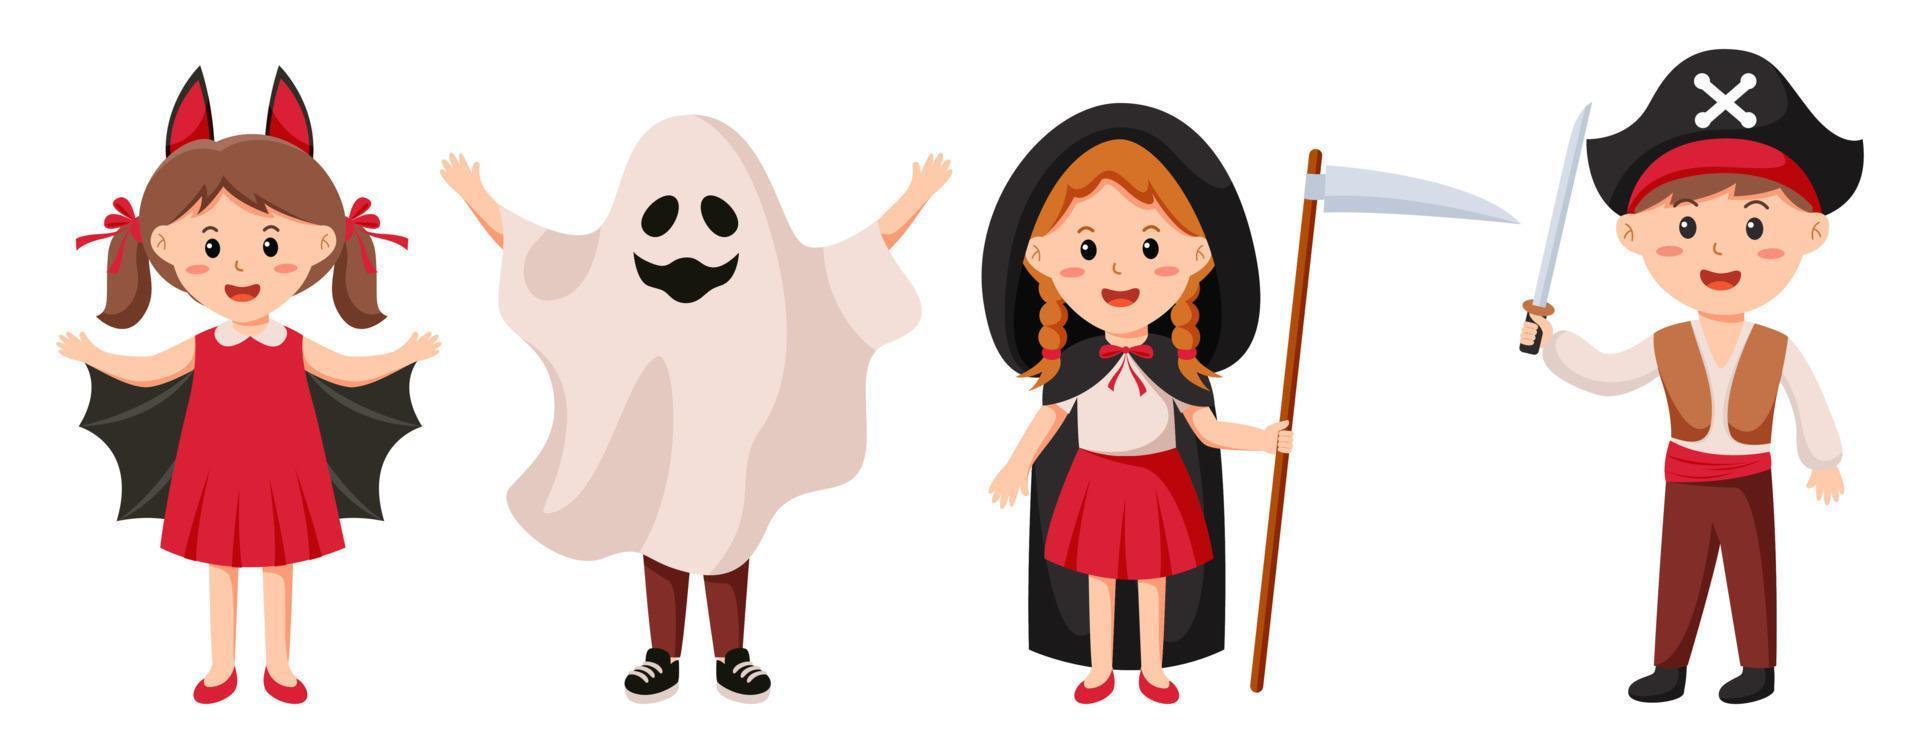 Halloween character vector set. Kids cartoon wearing Halloween costumes